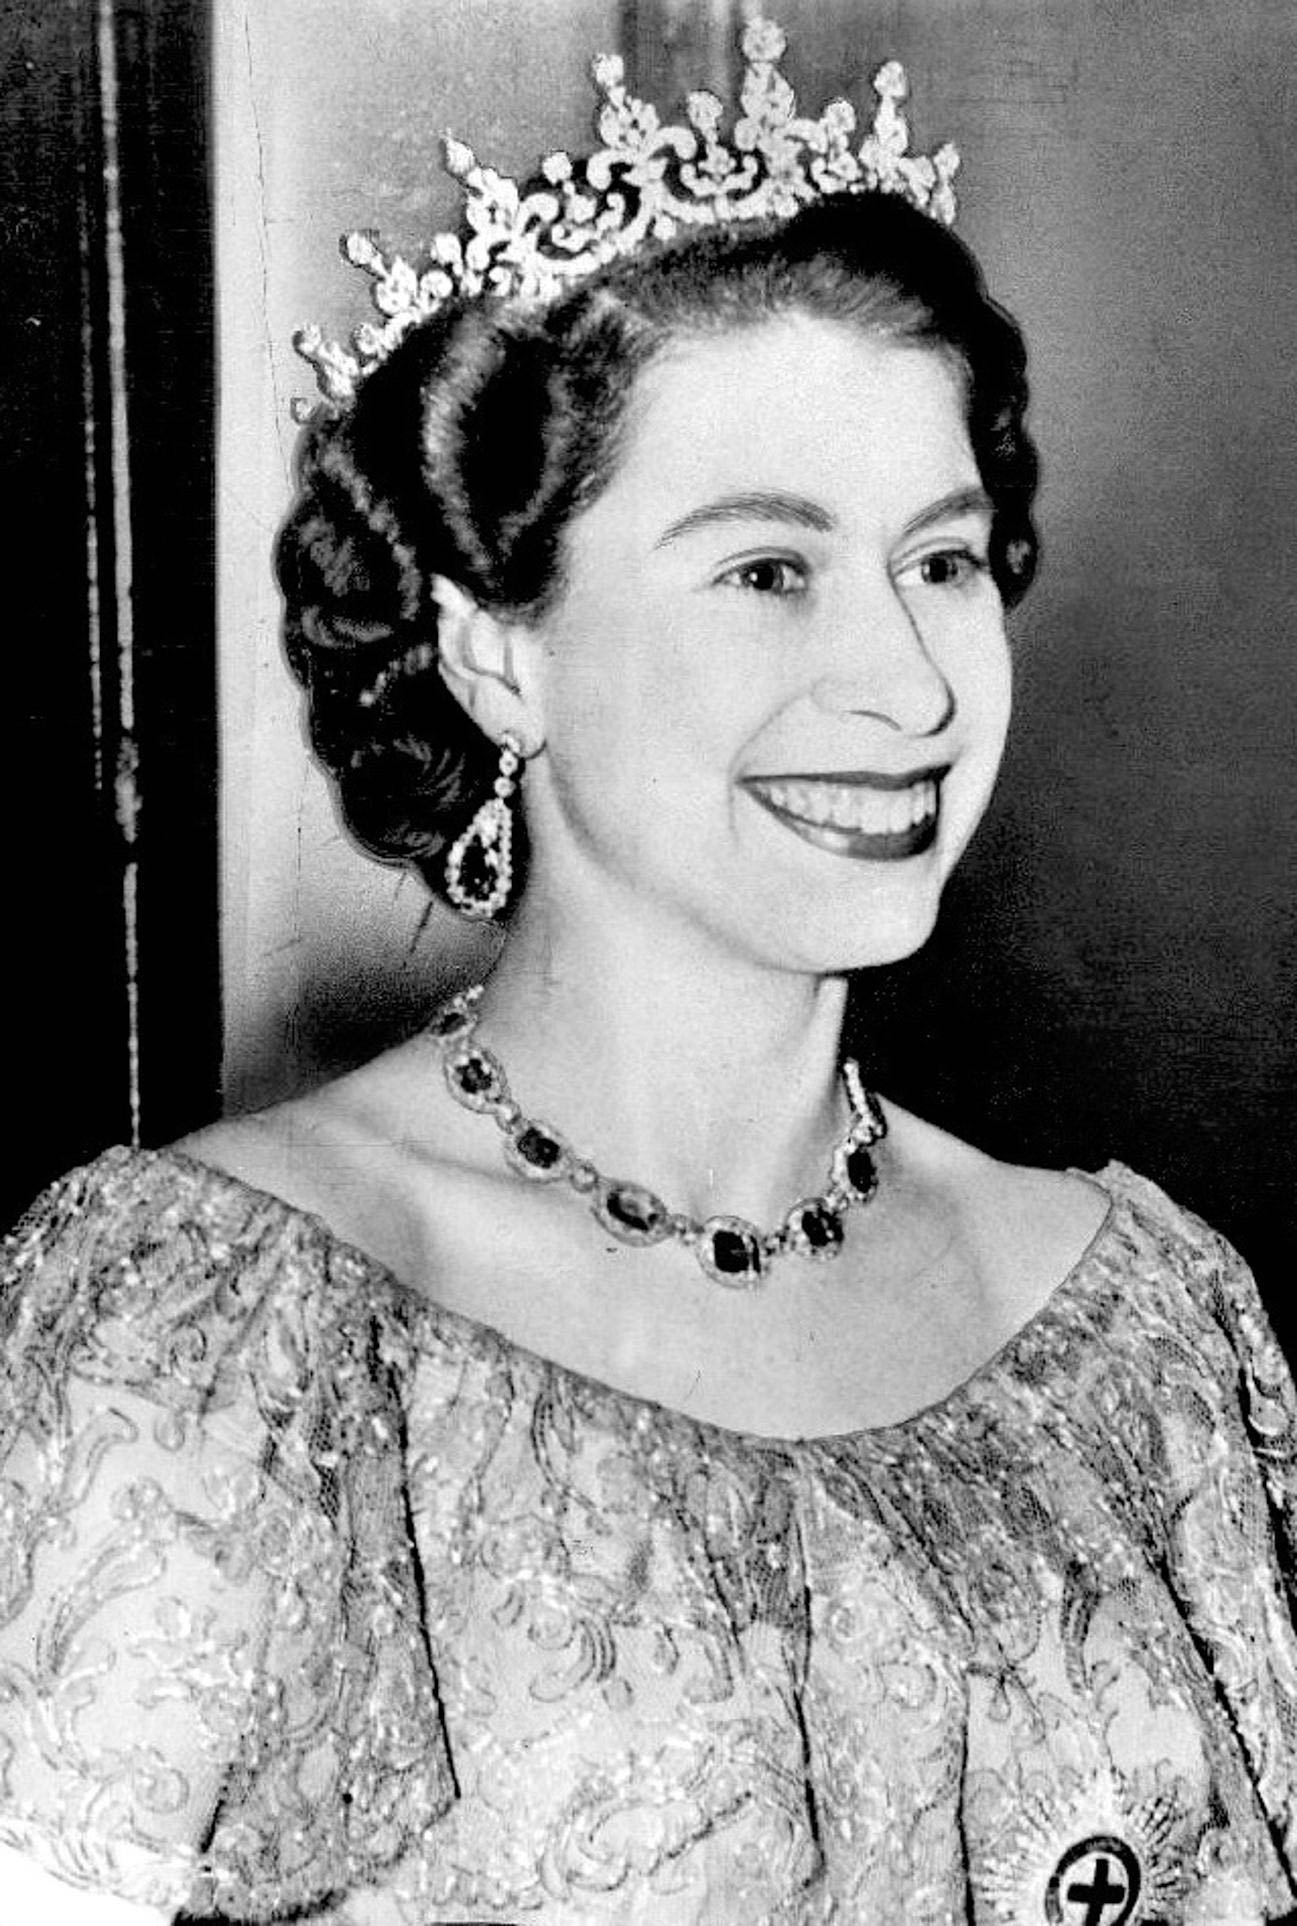 Her Majesty Queen Elizabeth Ii 1926 2022